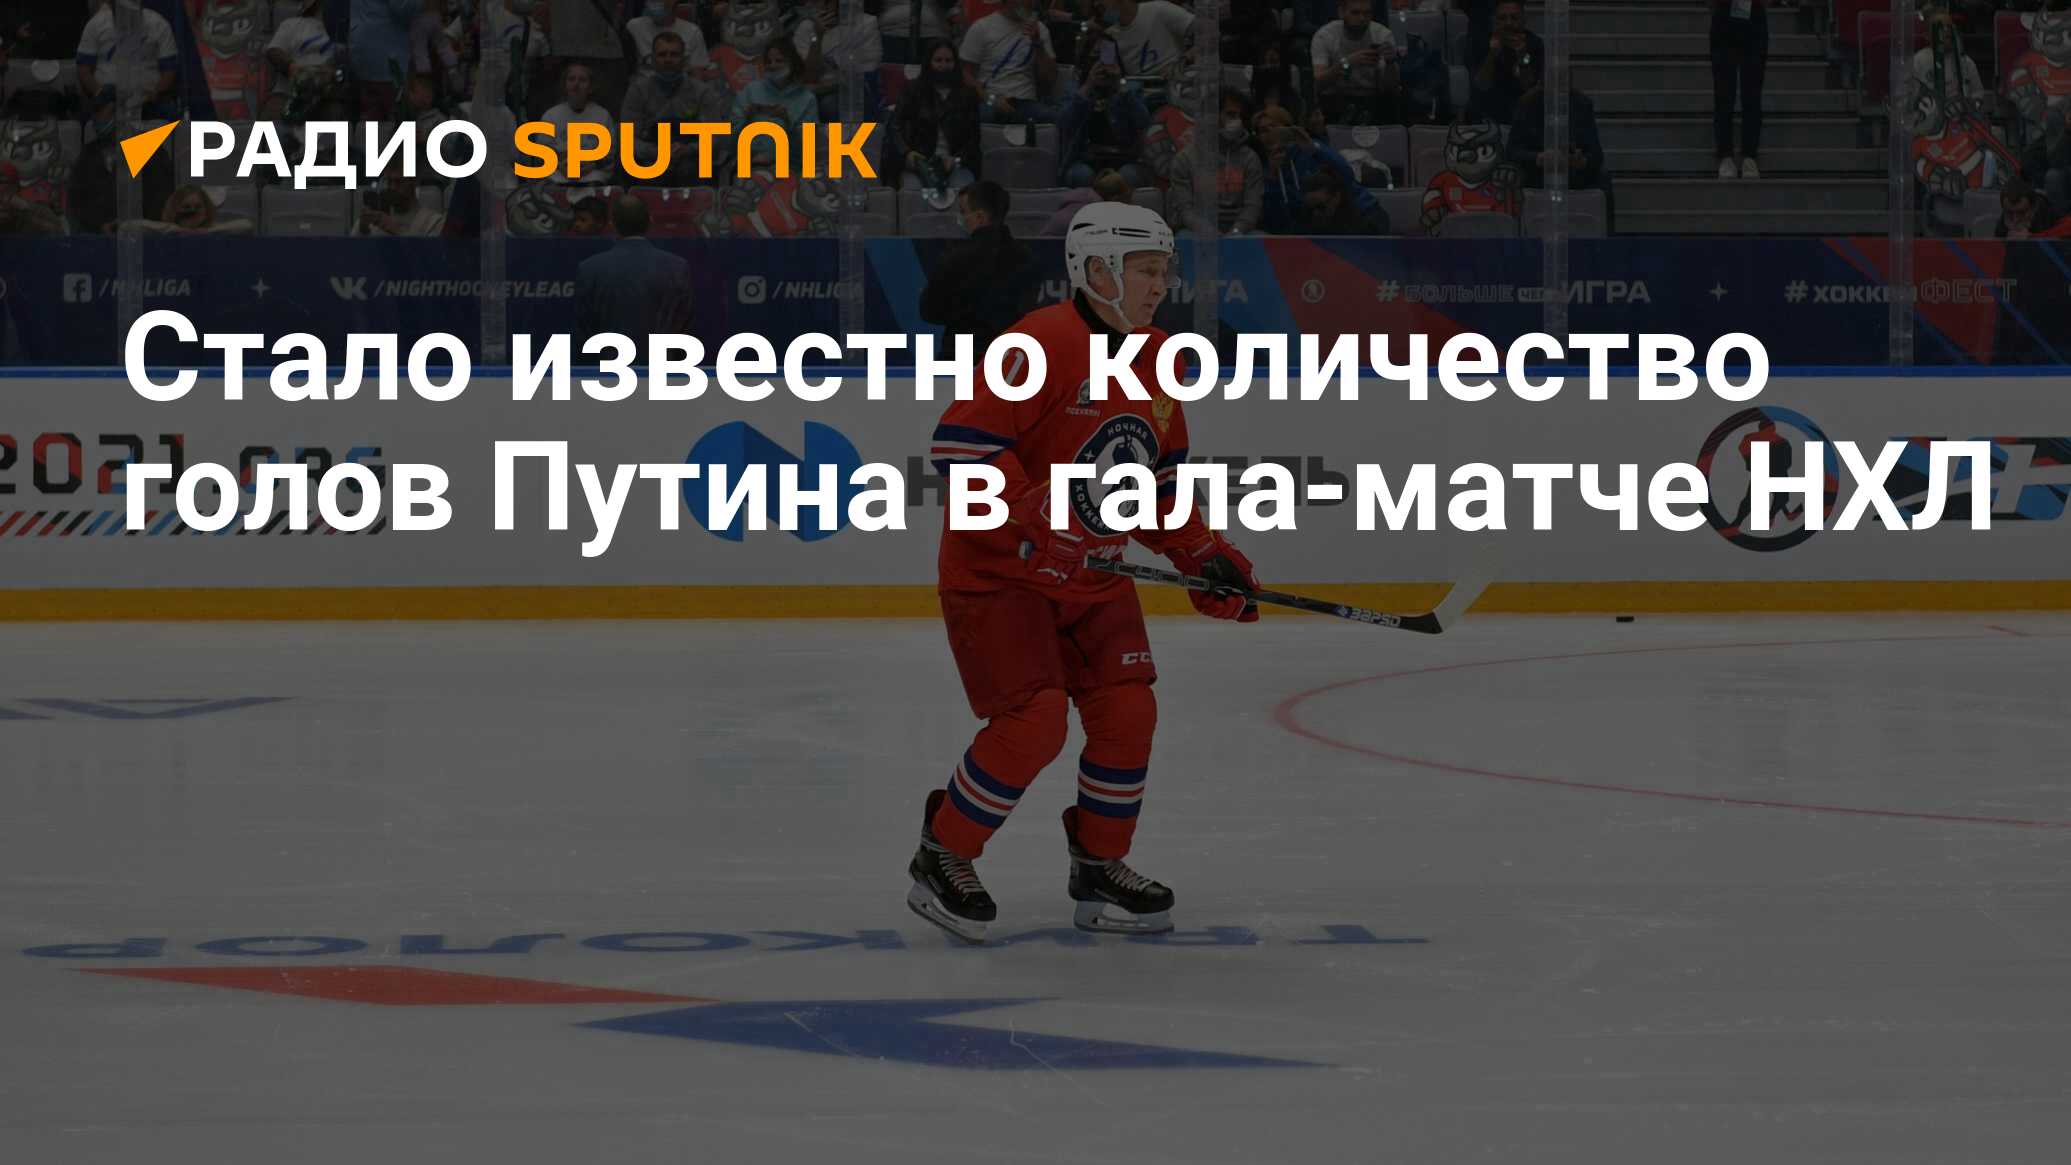 Стало известно количество голов Путина в гала-матче НХЛ - Радио Sputnik,  10.05.2021